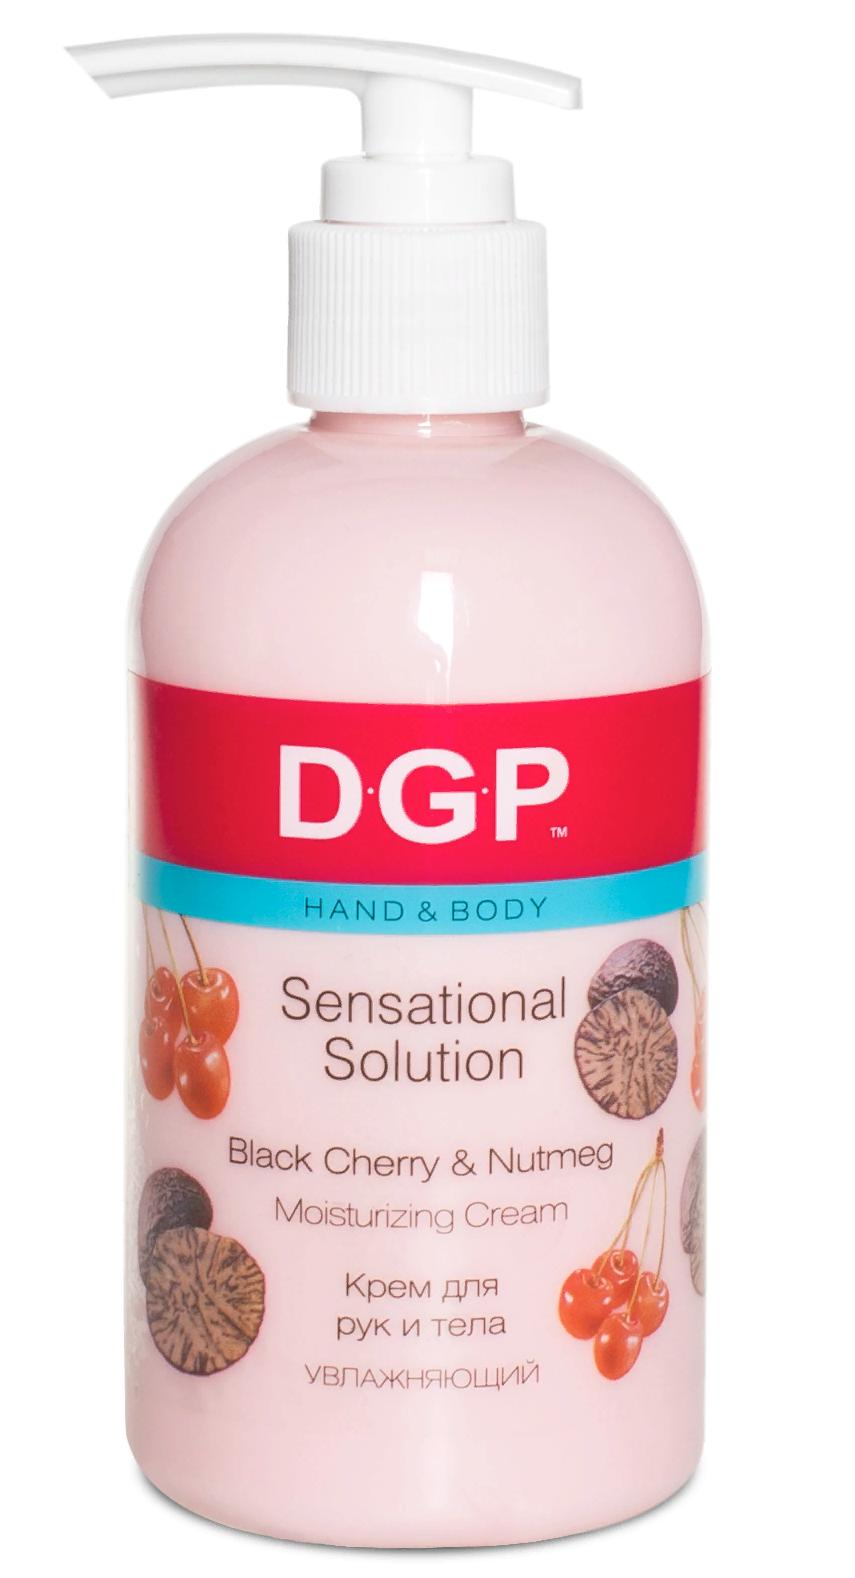 DOMIX Крем увлажняющий для рук и тела / Sensational Solution DGP 260 мл beafix крем для ног hemp oil beauty therapy с высоким содержанием конопляного масла